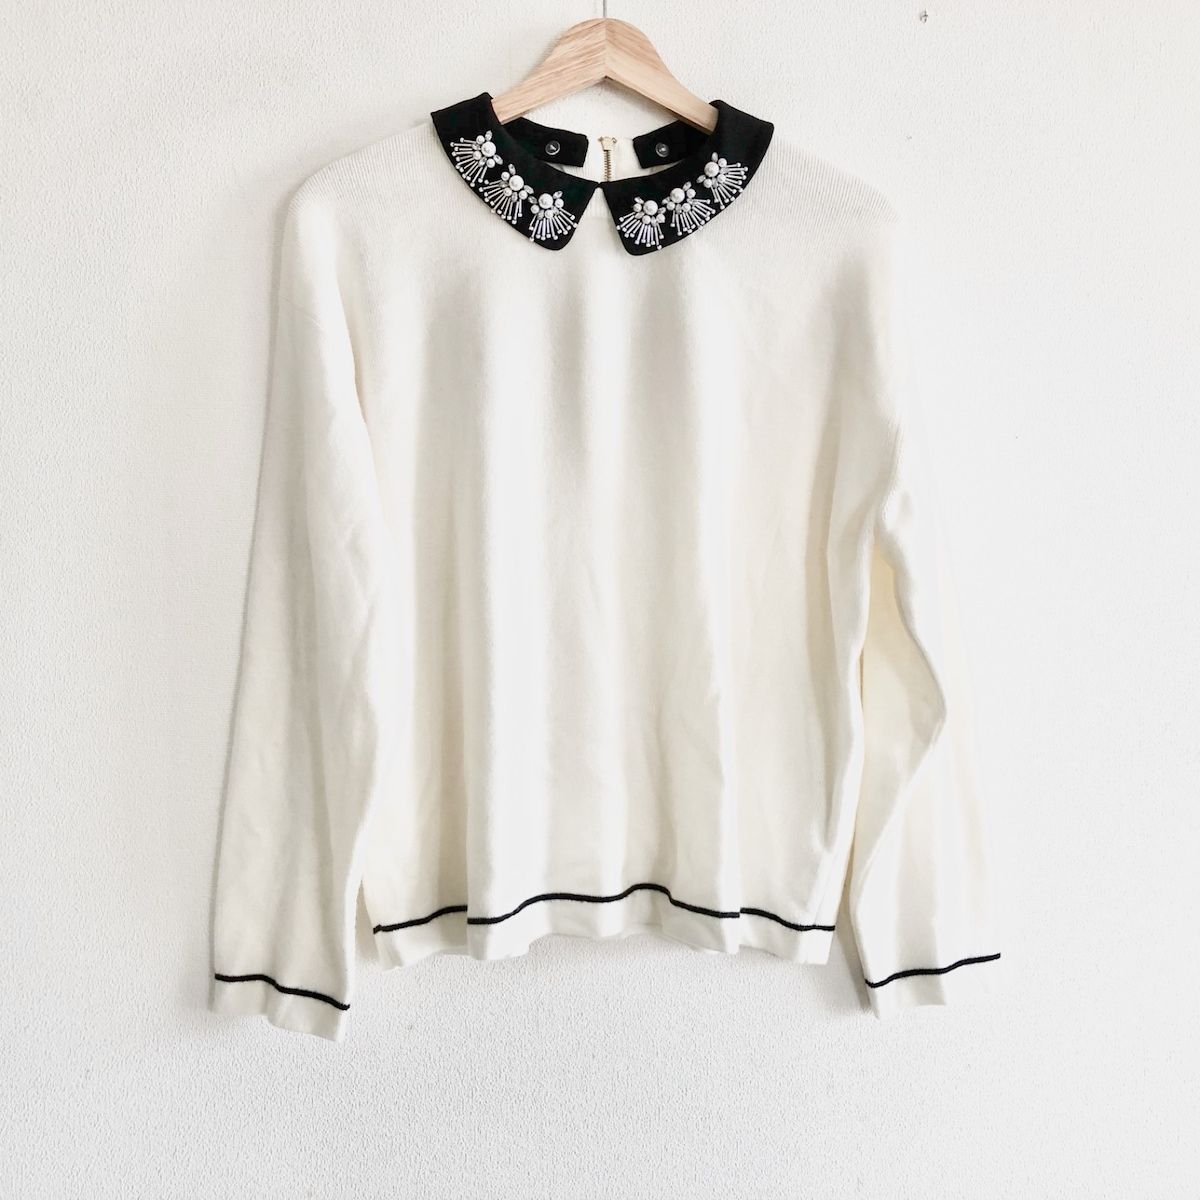 Rose Tiara(ローズティアラ) 長袖セーター サイズ42 L レディース美品  - 白×黒 ビジュー/付け襟 ナイロン、アクリル